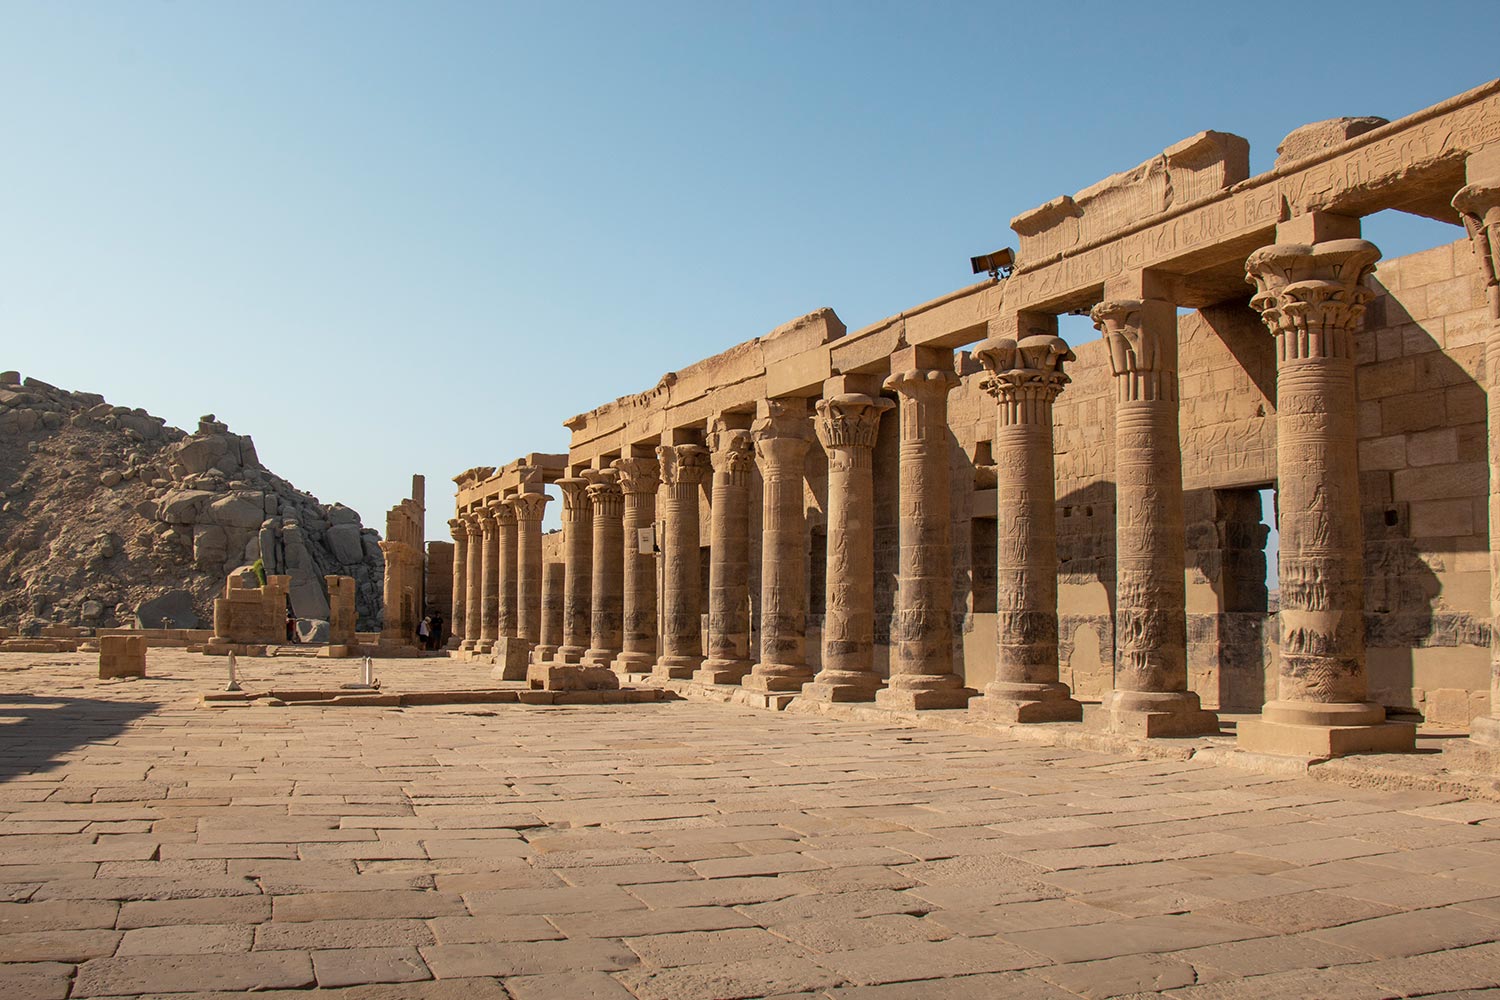 Colonnes, Temple de Philae, Assouan, Égypte / Columns, Philae Temple, Aswan, Egypt